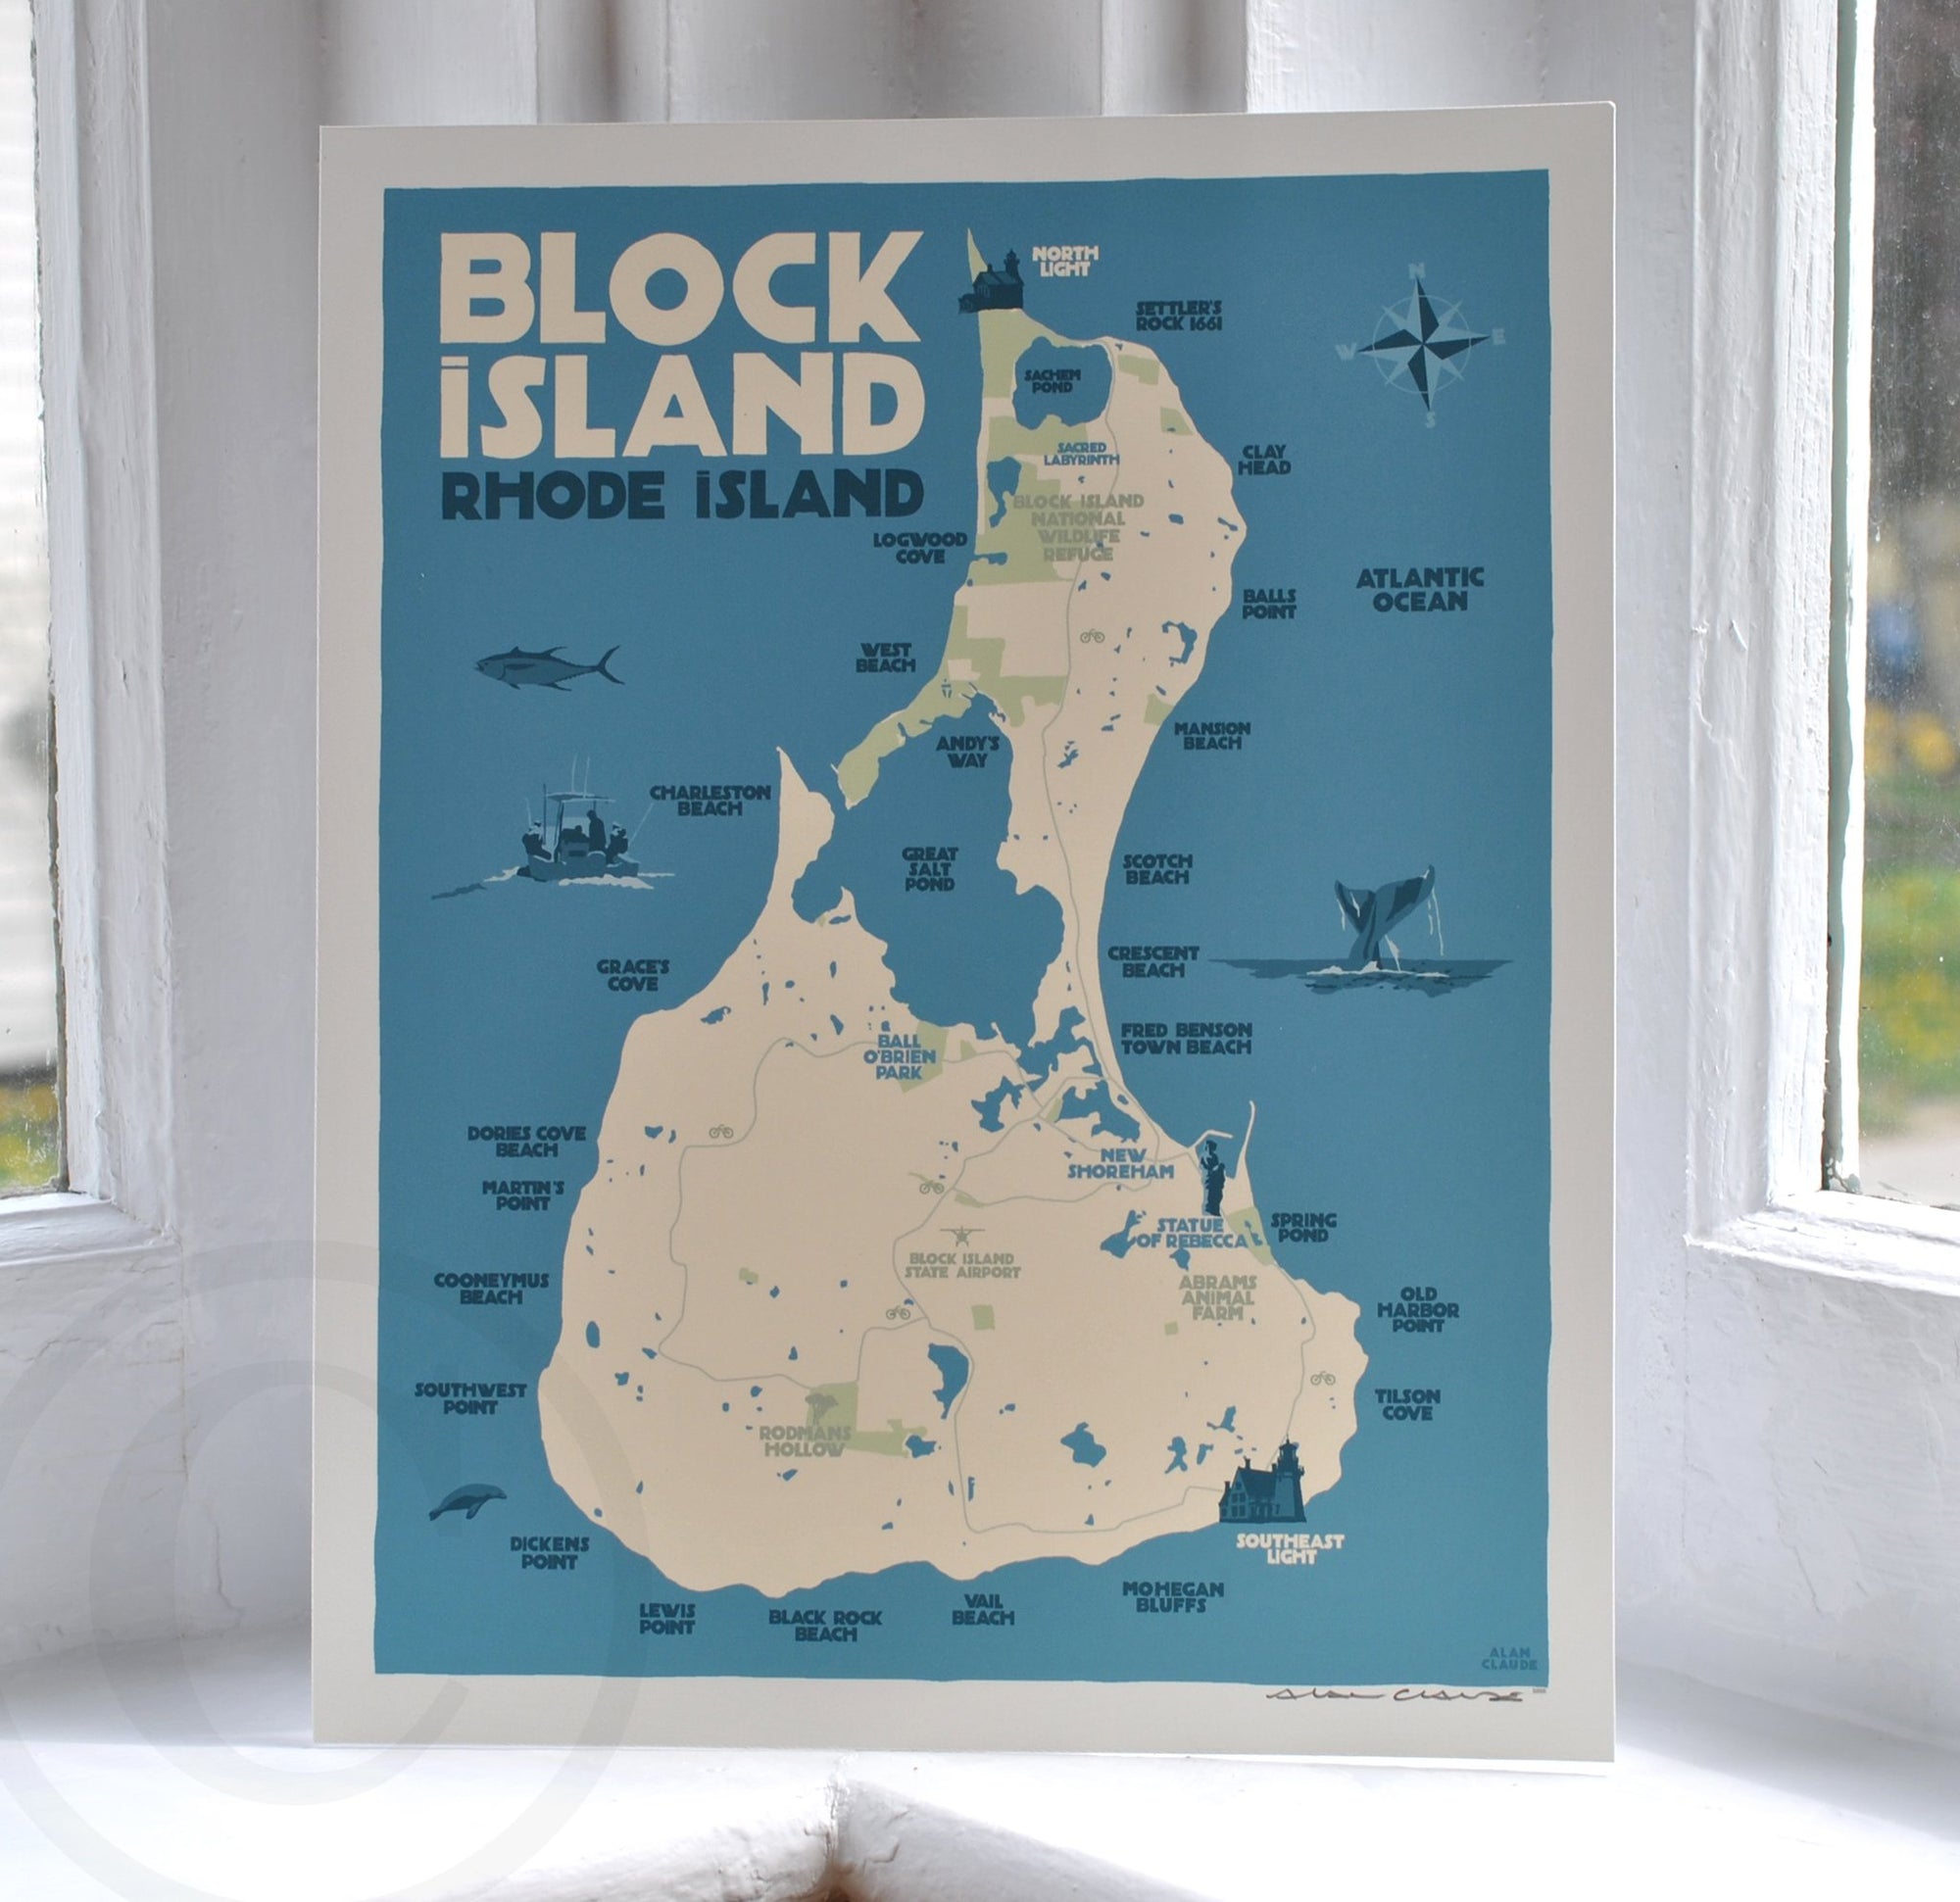 Block Island Map Art Print 8" x 10" Wall Poster By Alan Claude - Rhode Island